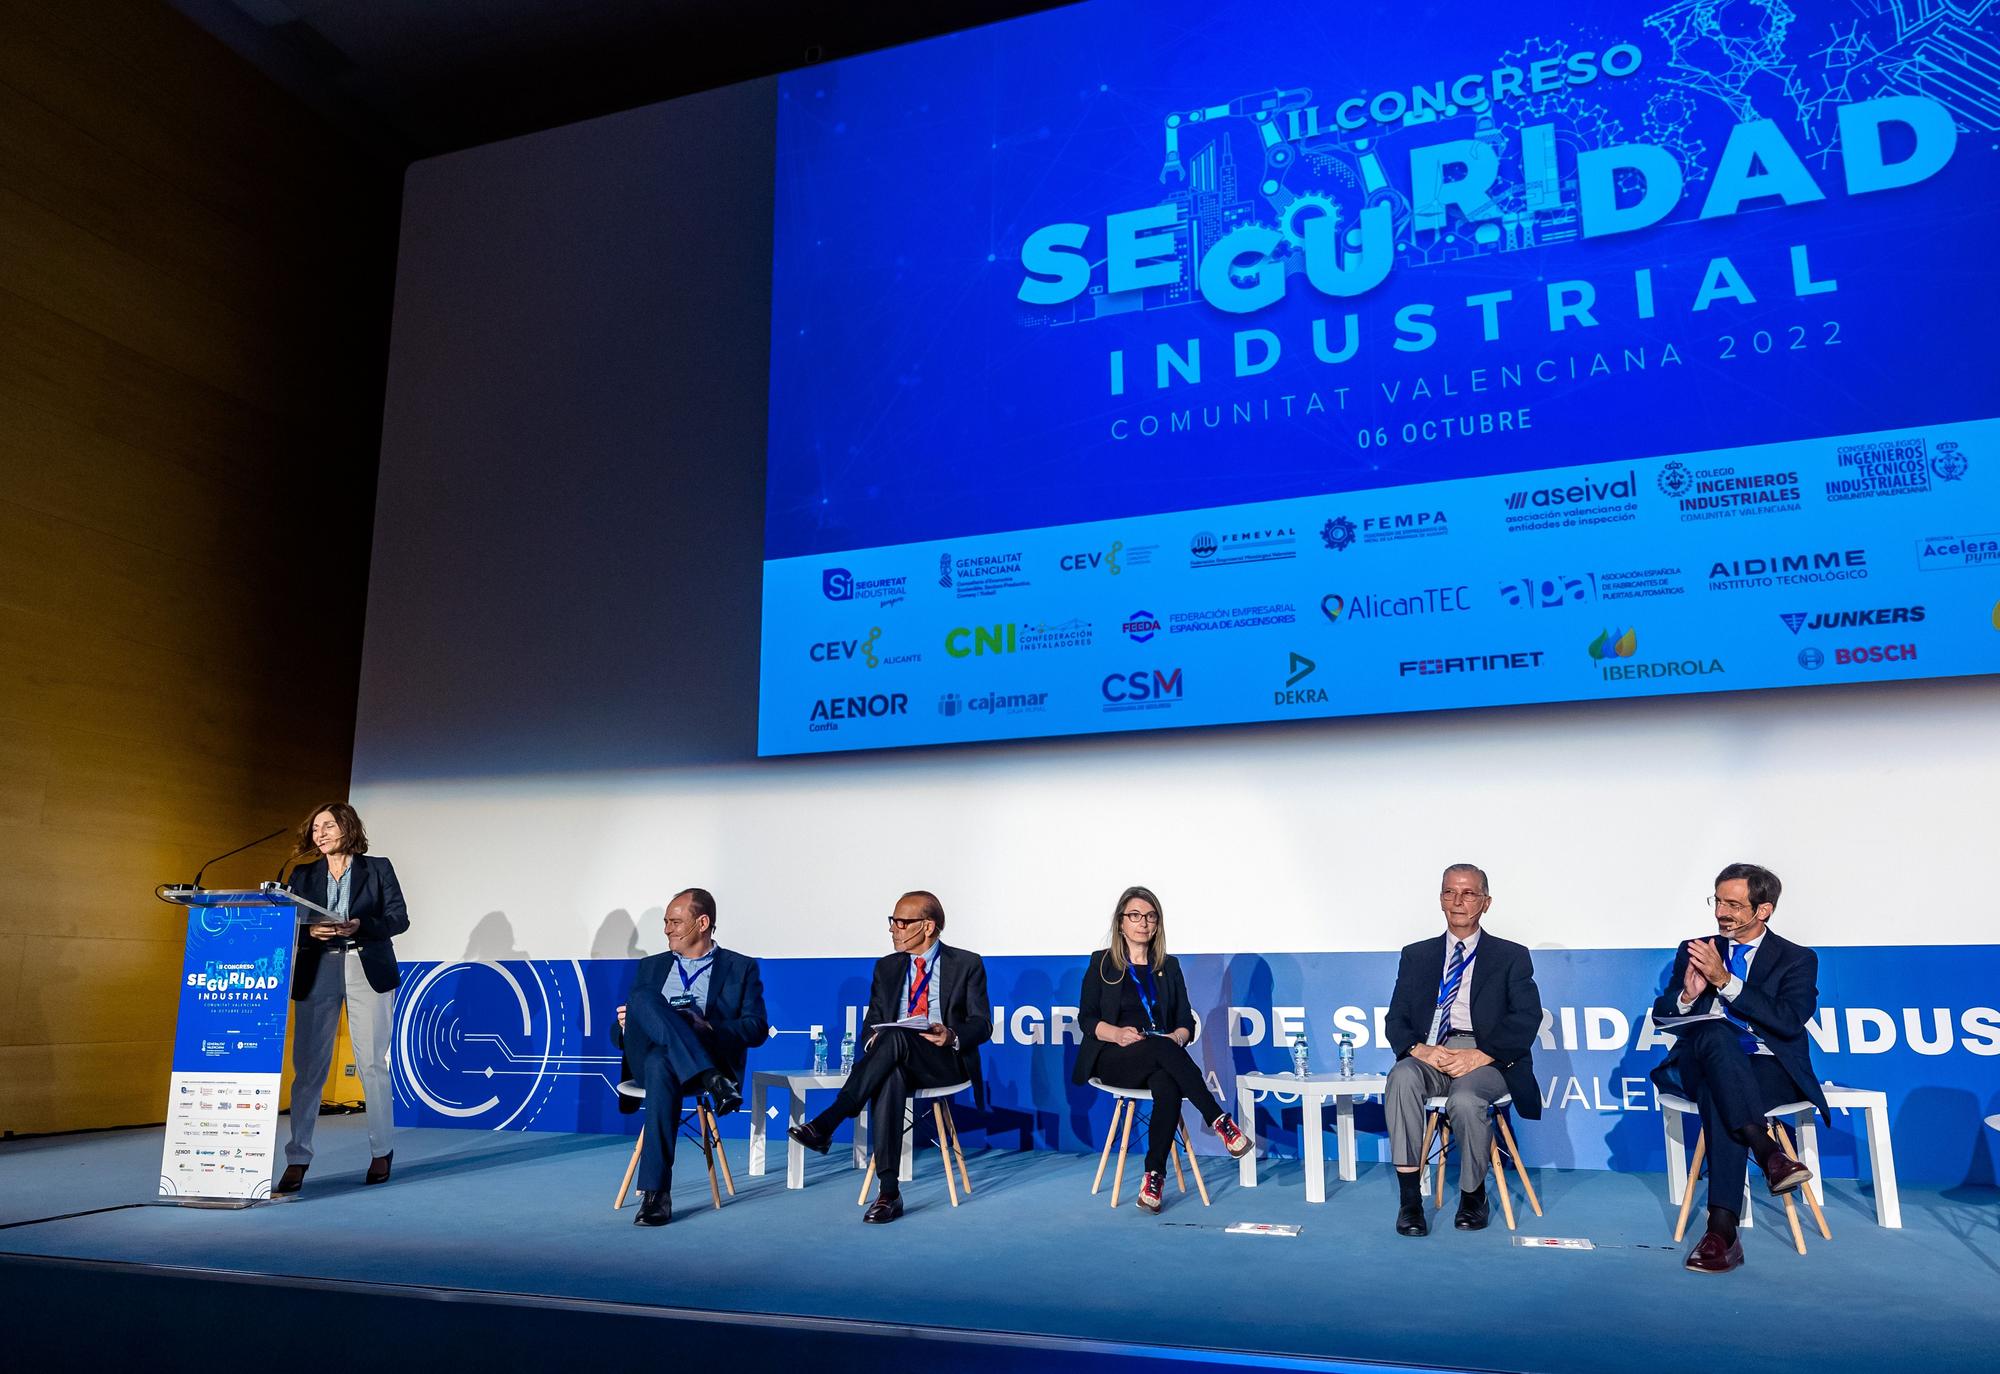 II Congreso de Seguridad Industrial de la Comunidad Valenciana